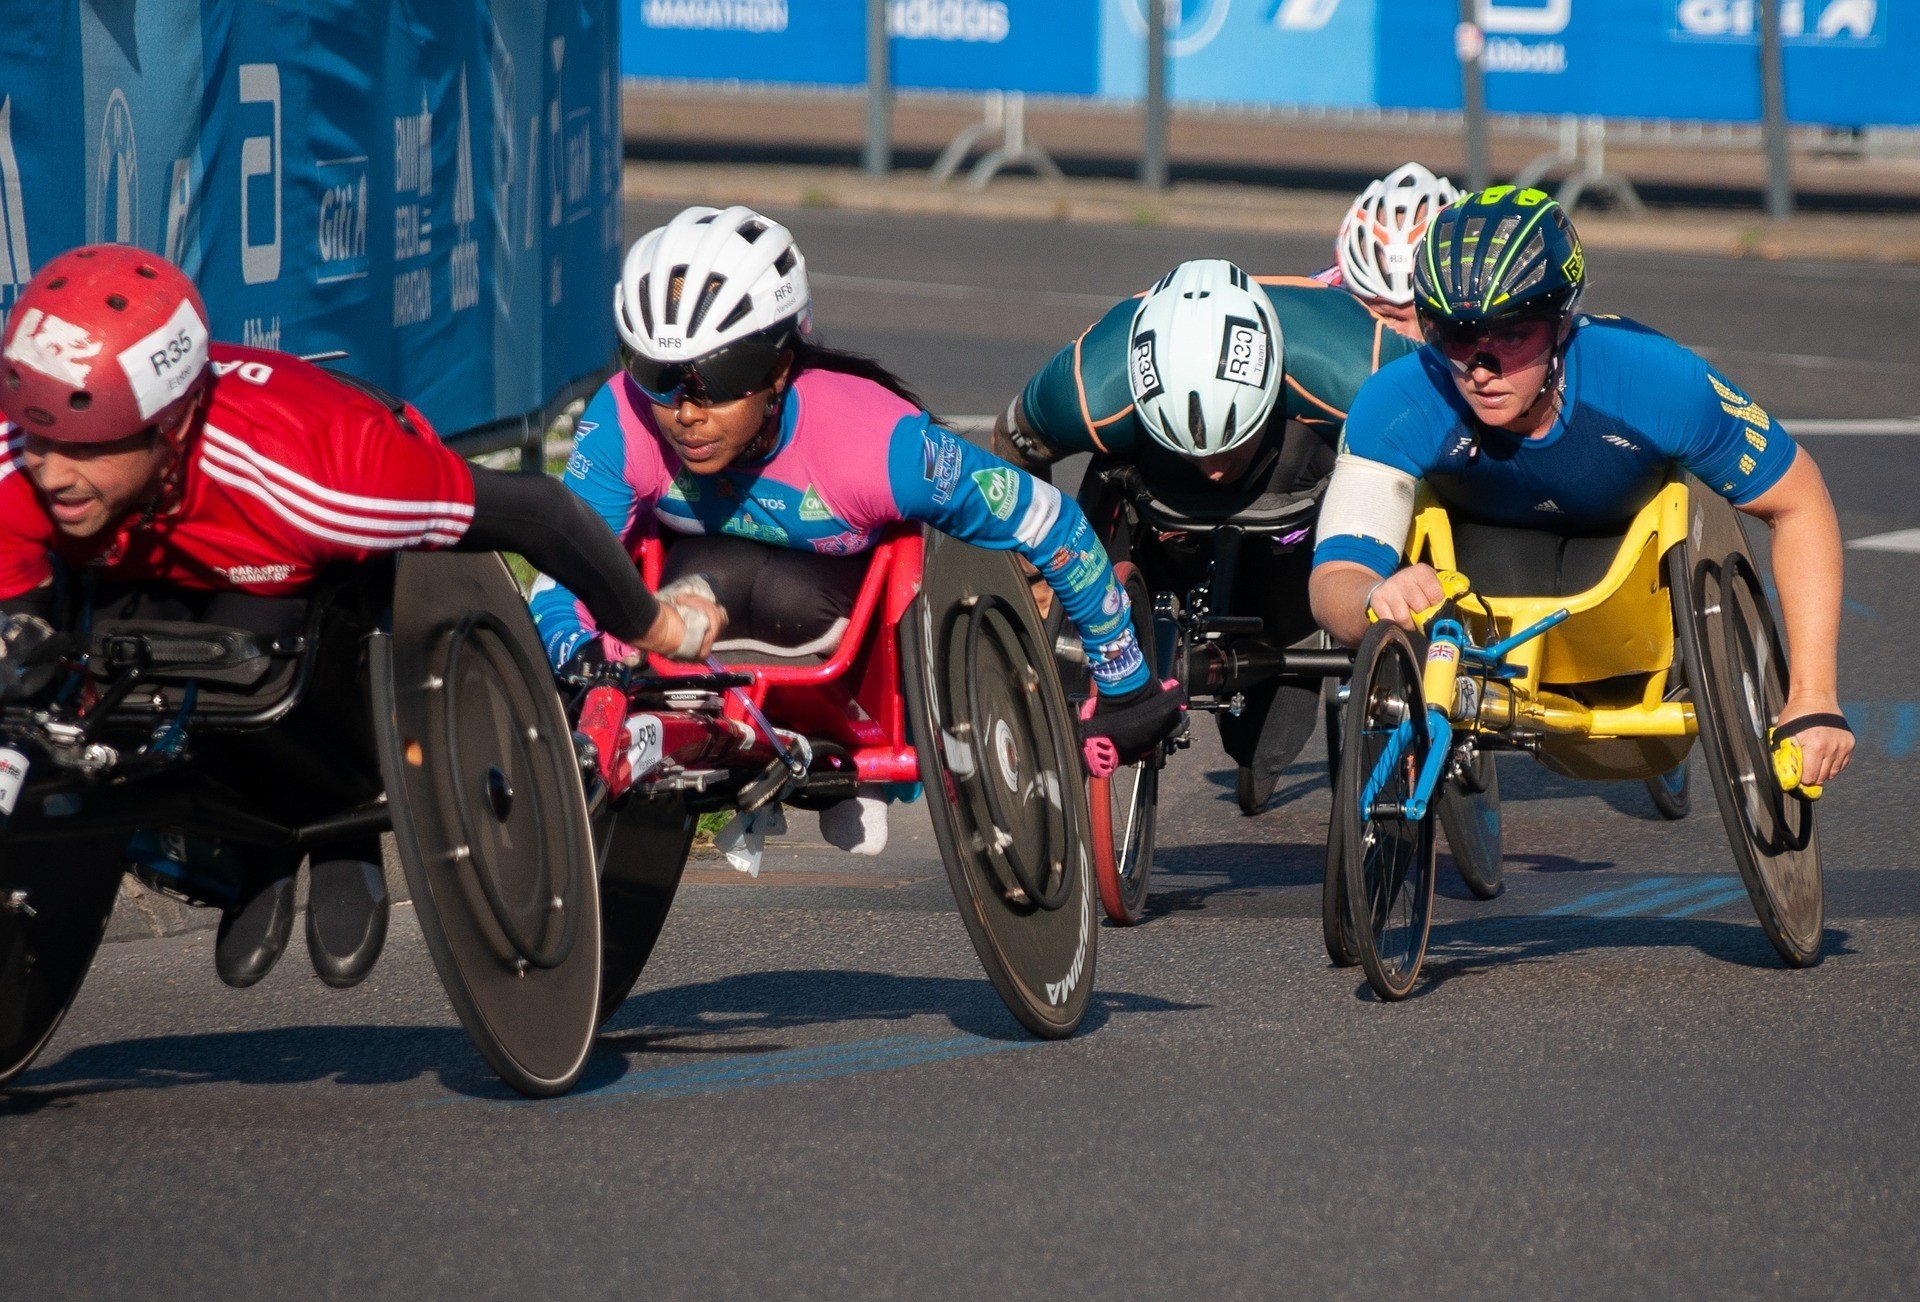 Atletas em cadeiras de rodas competem em uma corrida ao ar livre.